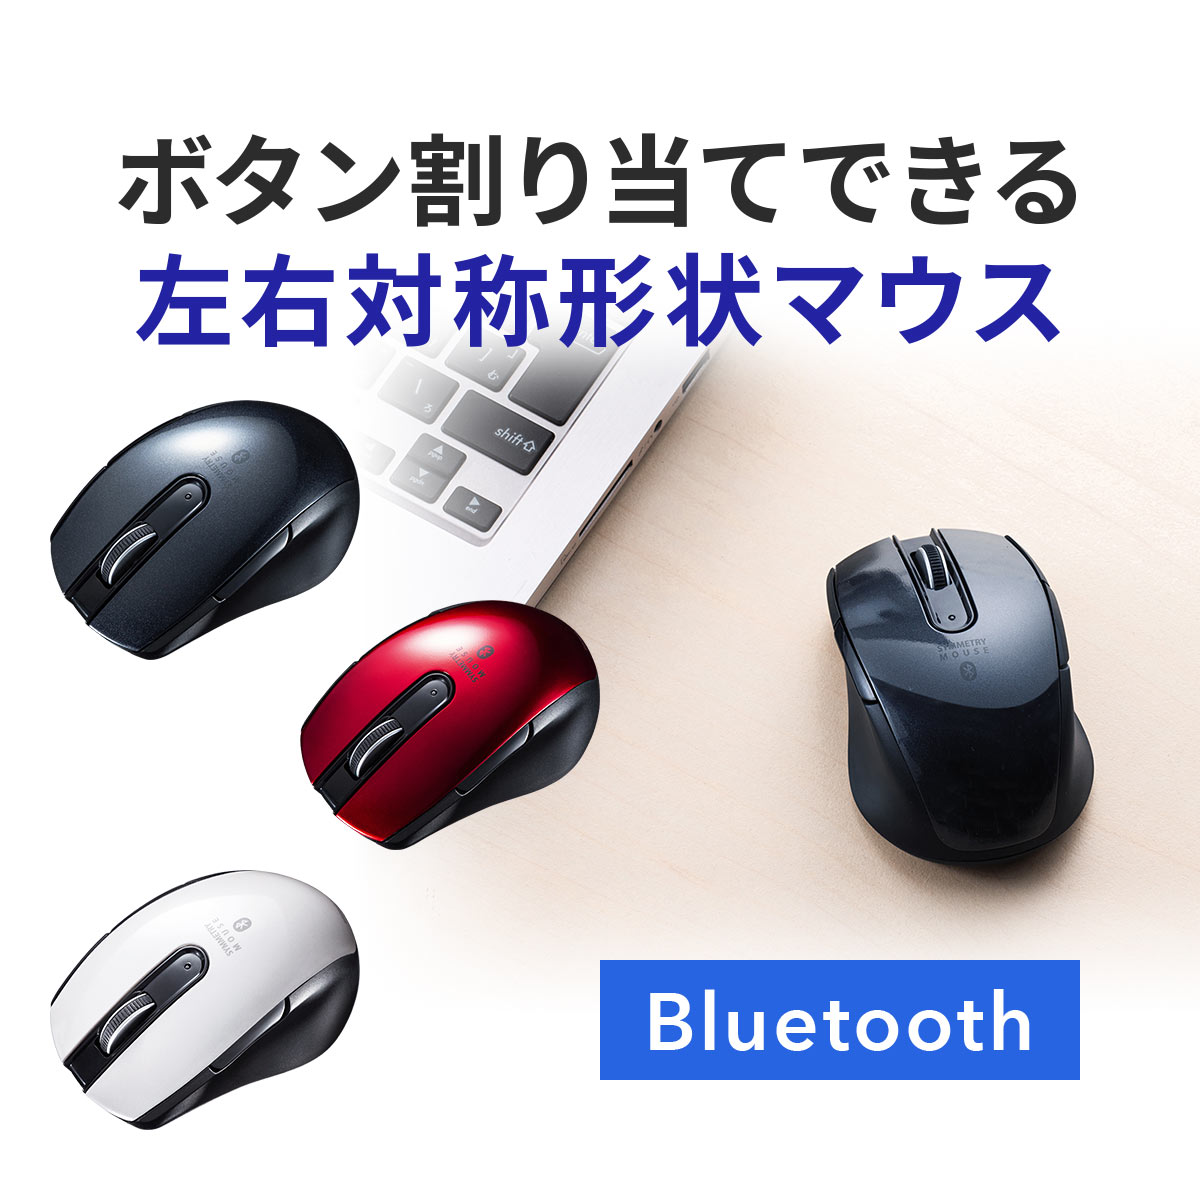 ワイヤレスマウス 無線 Bluetoothマウス 無線 小型 左右対称 左利き 右利き 5ボタン サイドボタン ボタン割り当て ブルートゥース 多ボタンマウス